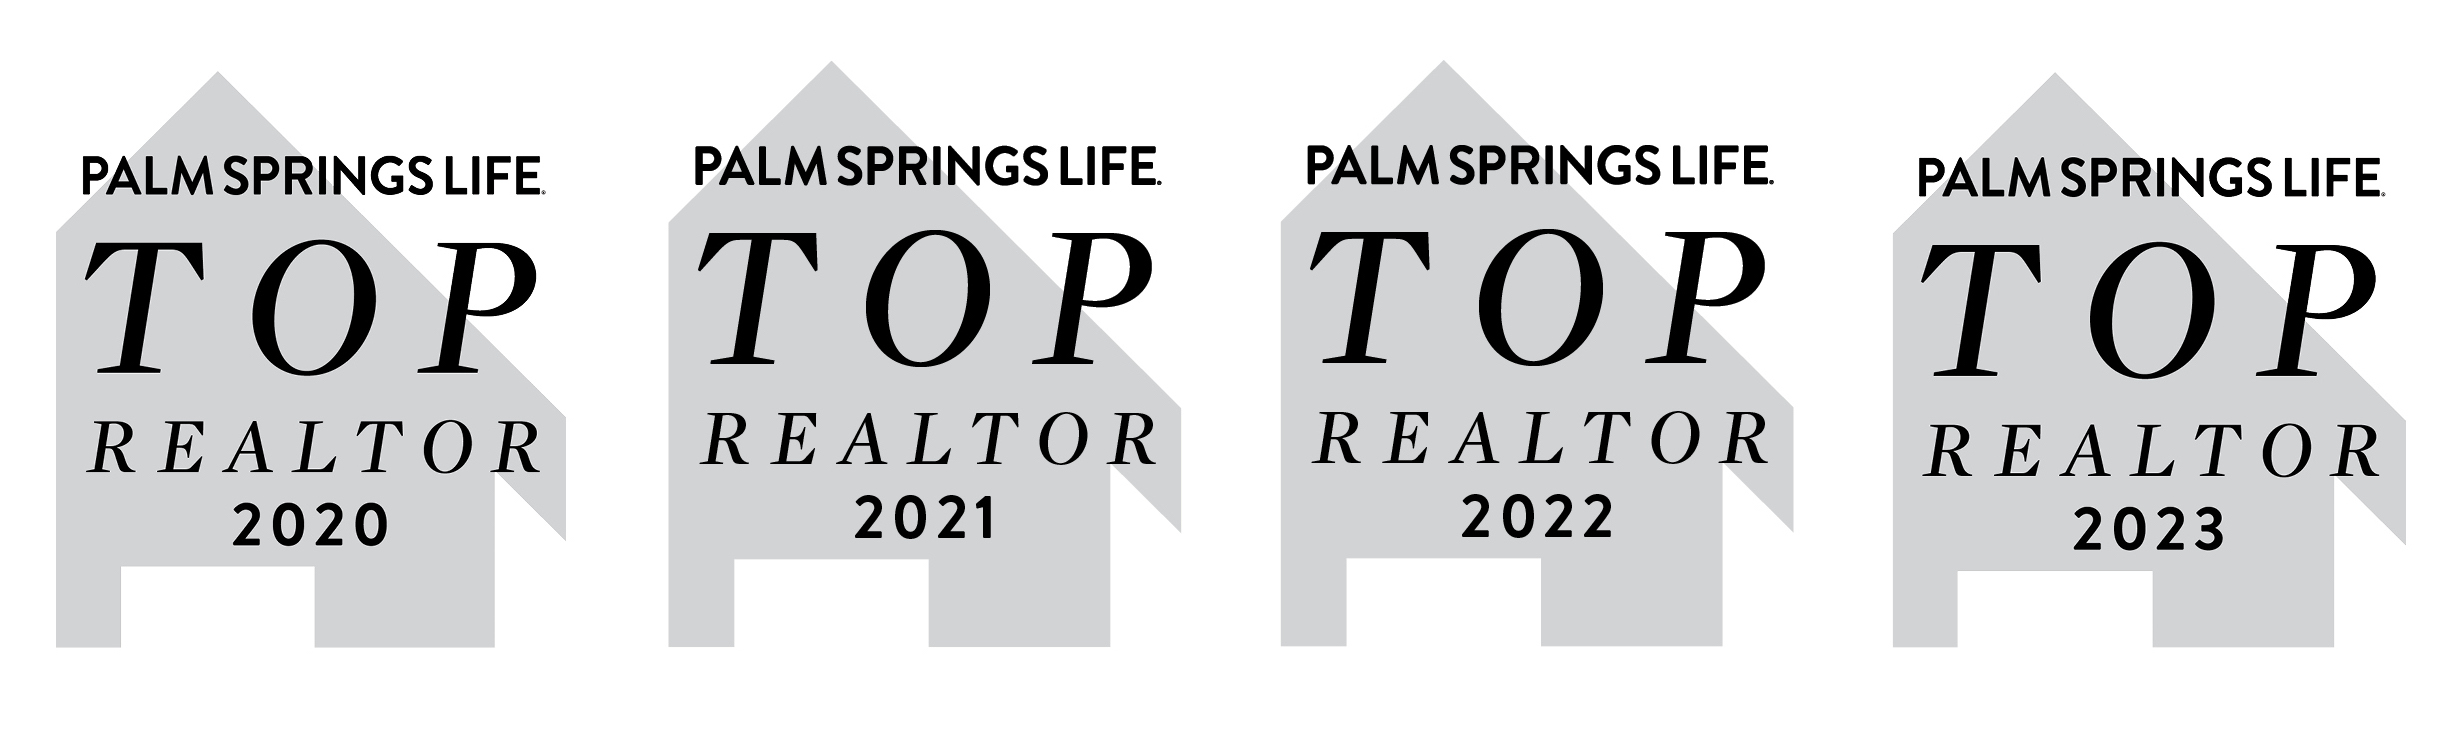 A text banner describing Palm Springs Lifes top realtor for 2020